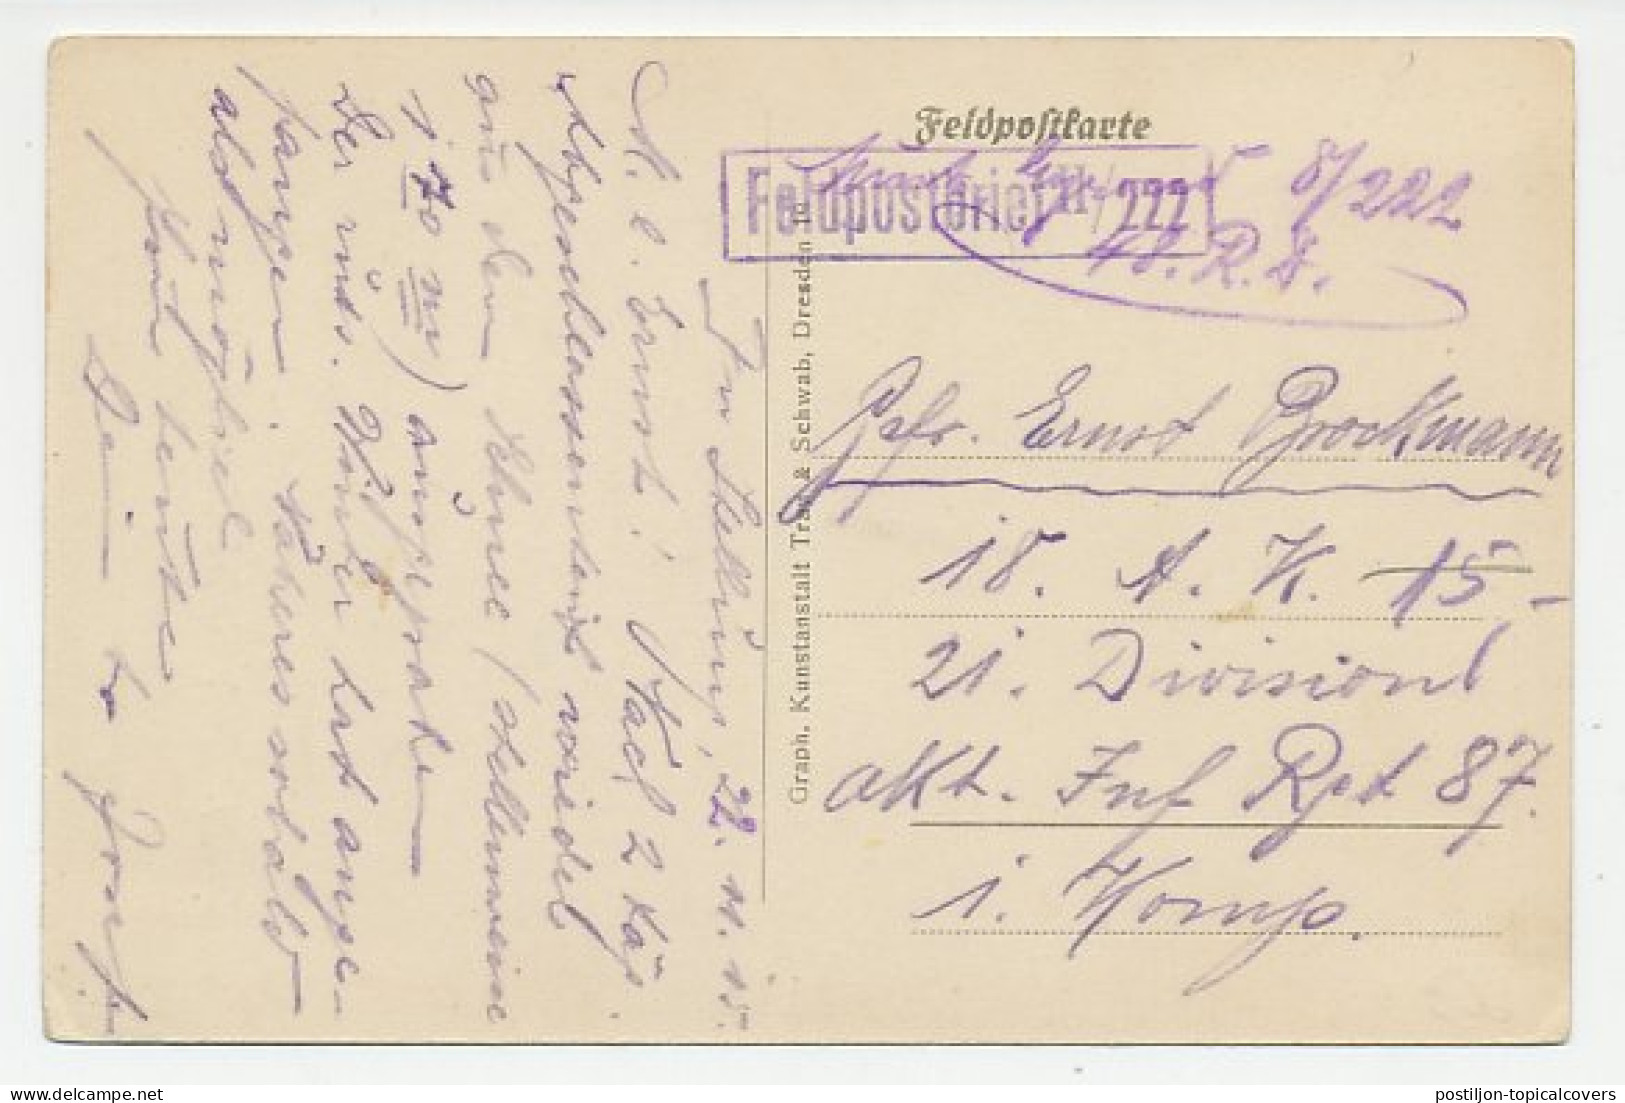 Fieldpost Postcard Germany 1915 War - Horse - Angels - Fallen Soldiers - WWI - WW1